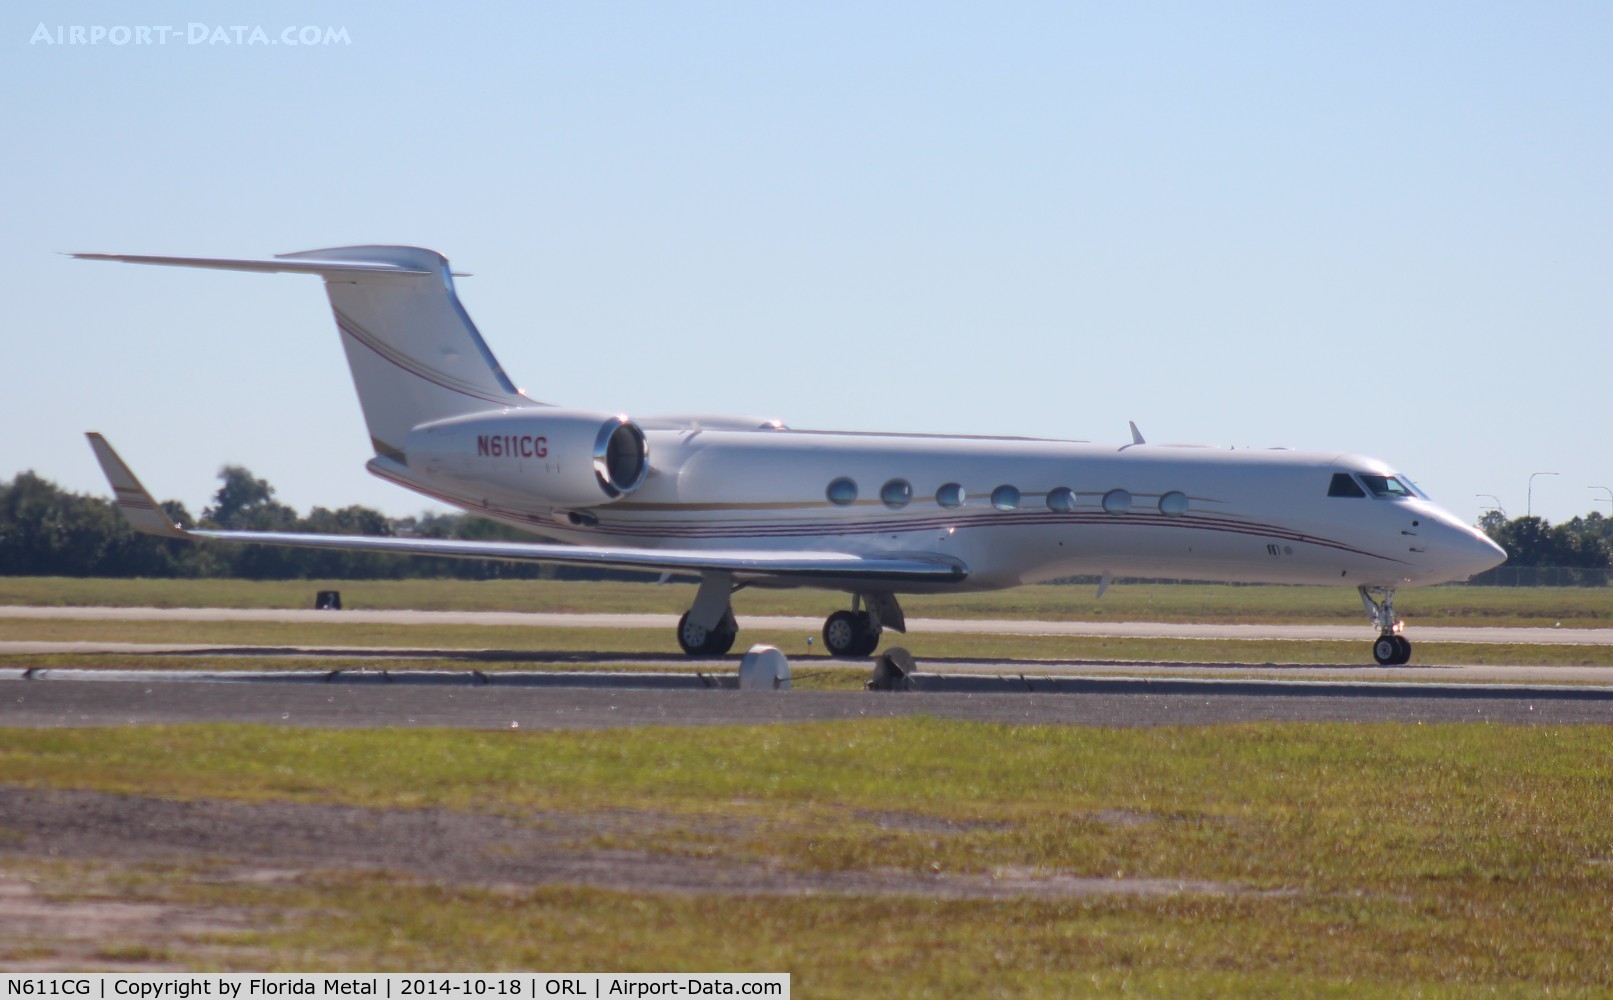 N611CG, 2006 Gulfstream Aerospace GV-SP (G550) C/N 5108, Gulfstream 550